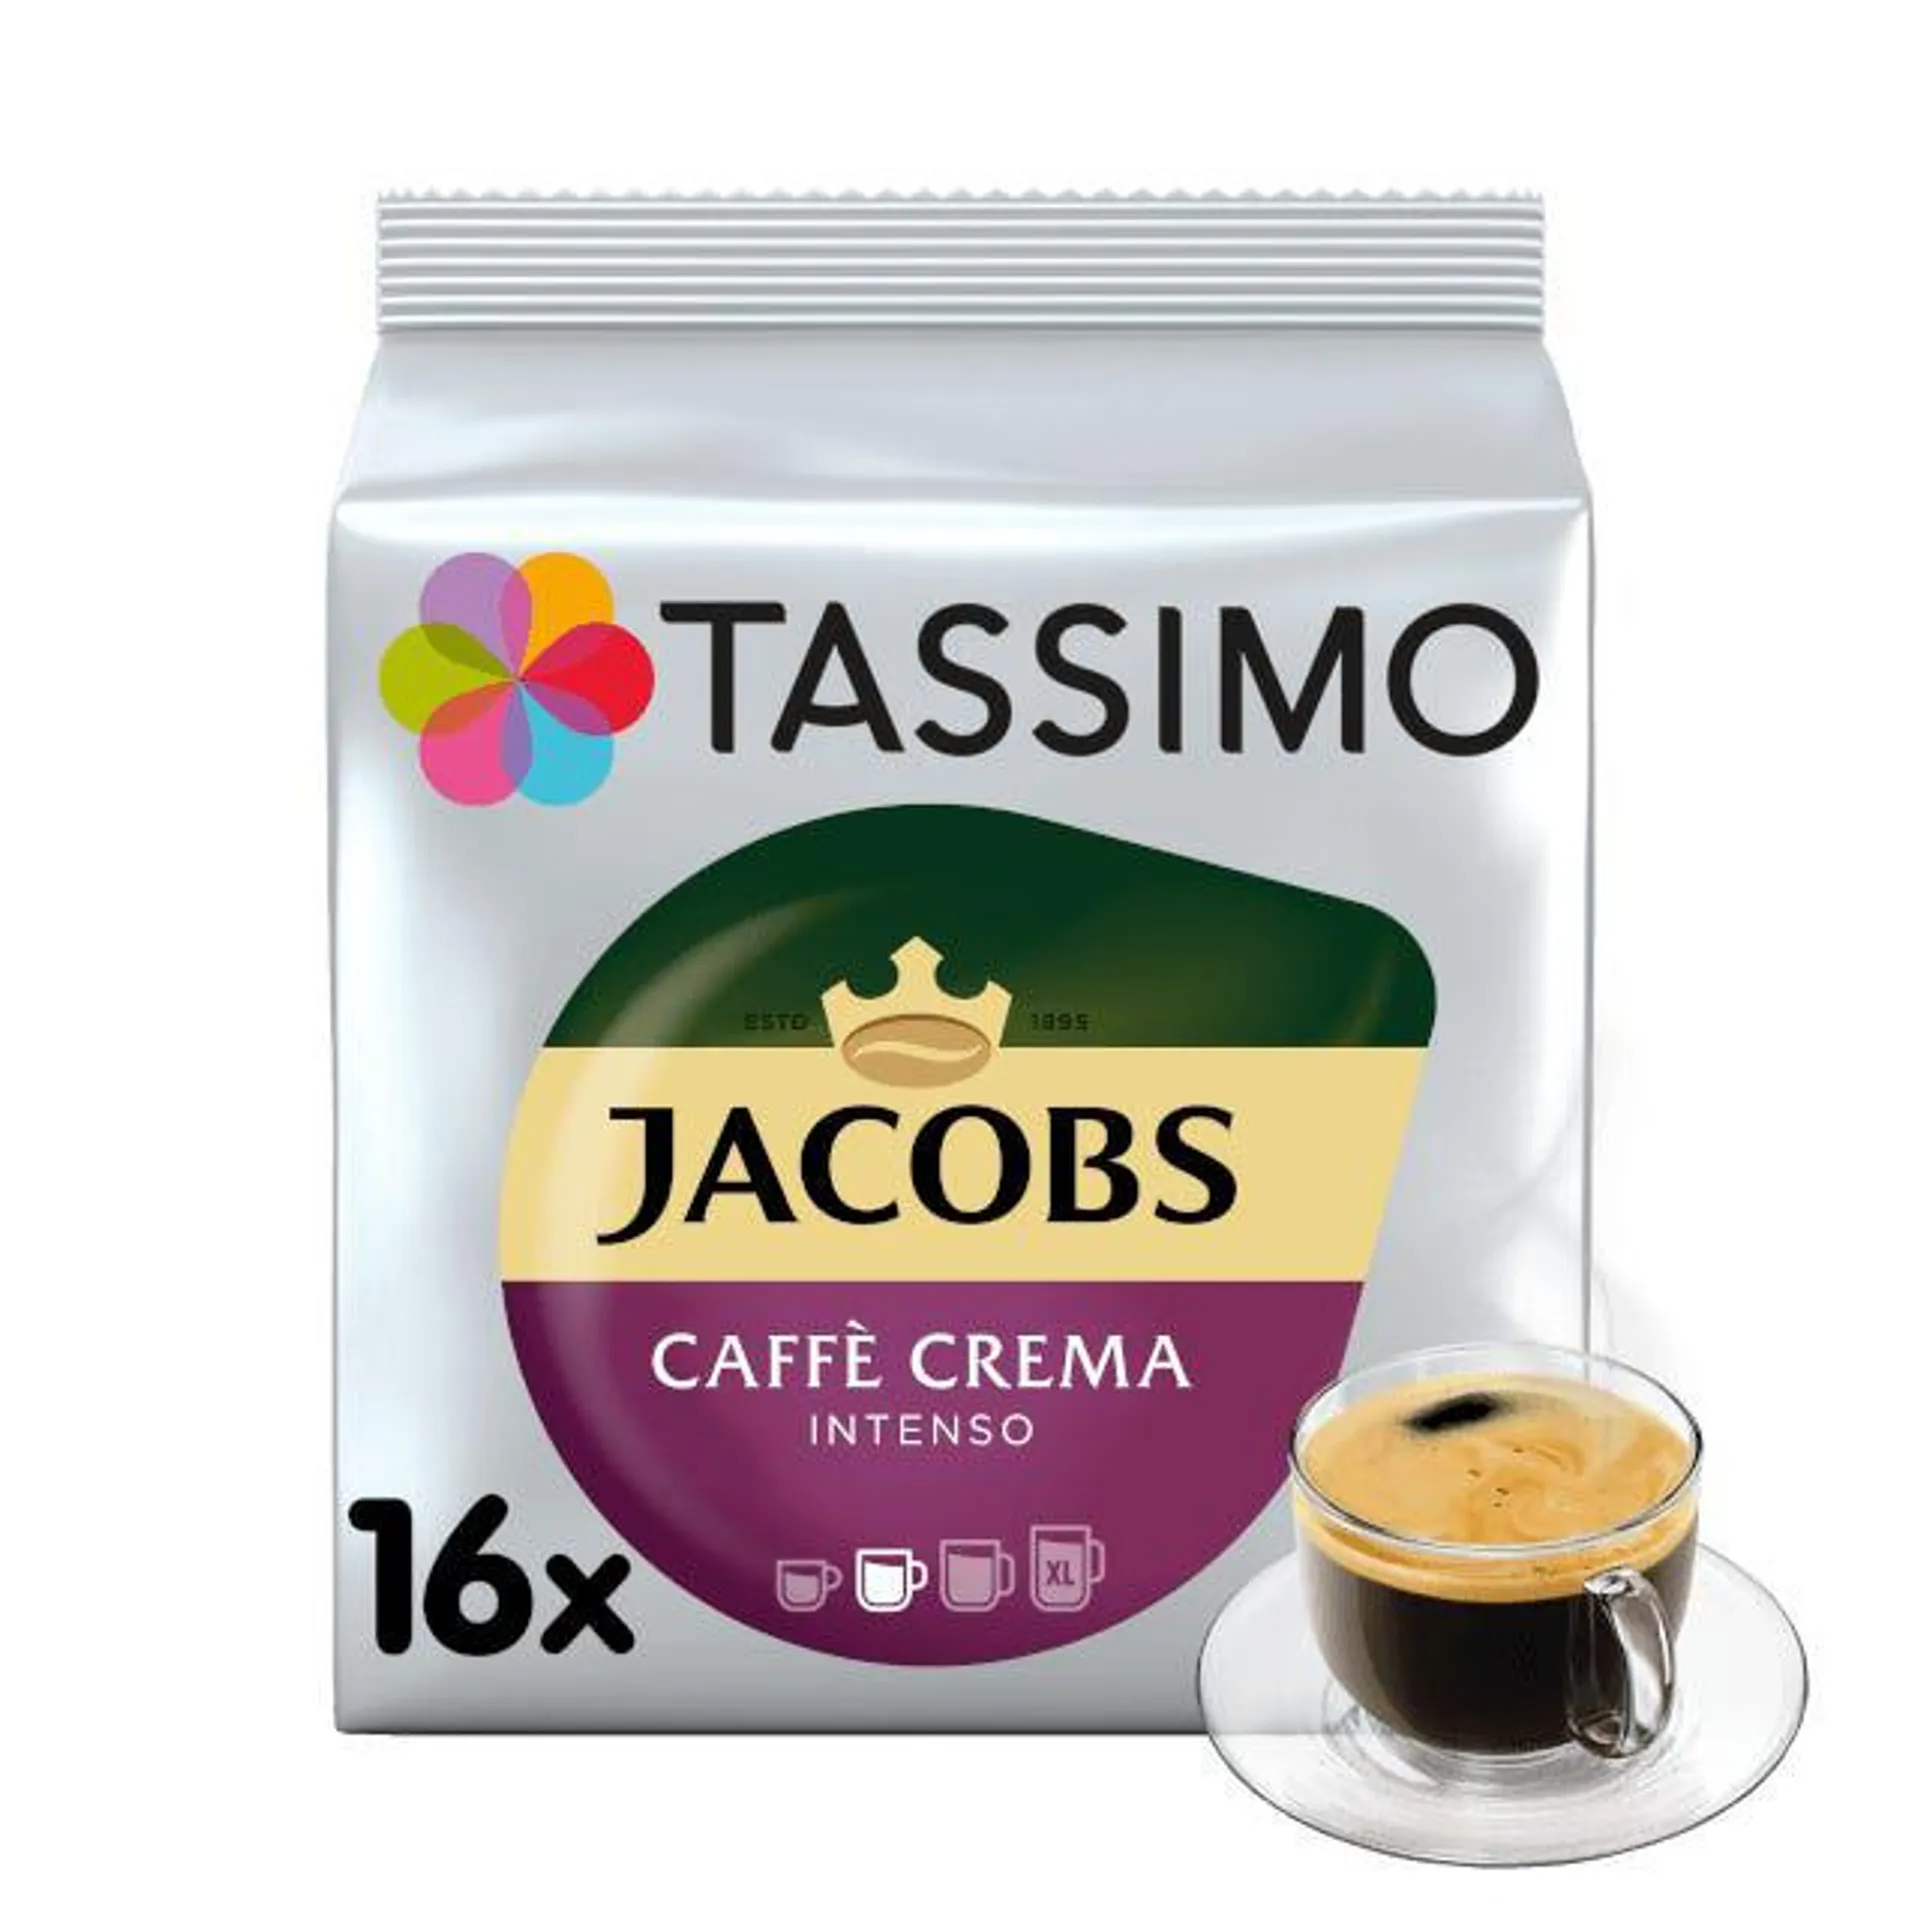 Jacobs Caffé Crema Intenso